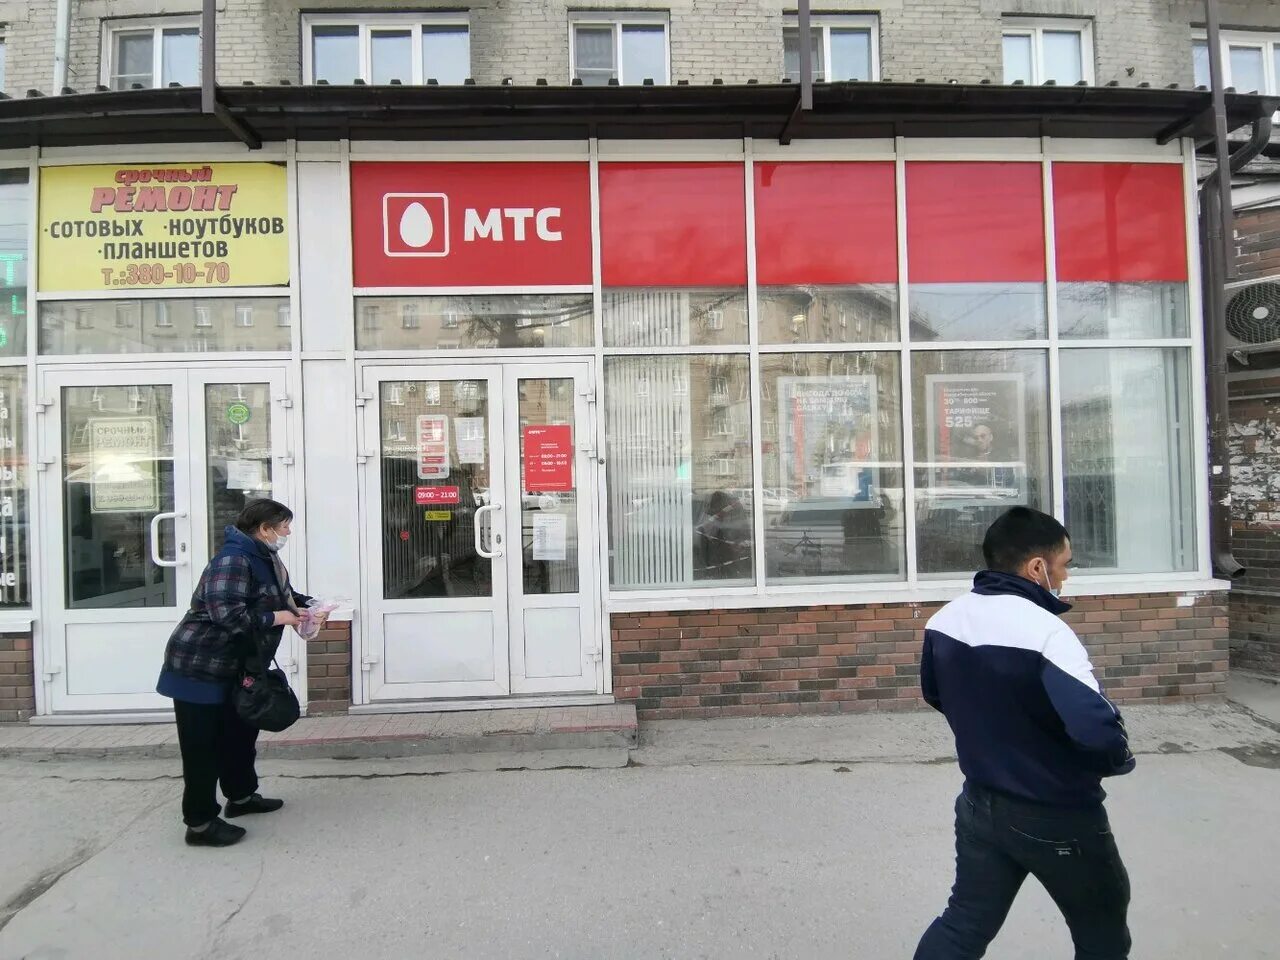 Банк новосибирск номер телефона